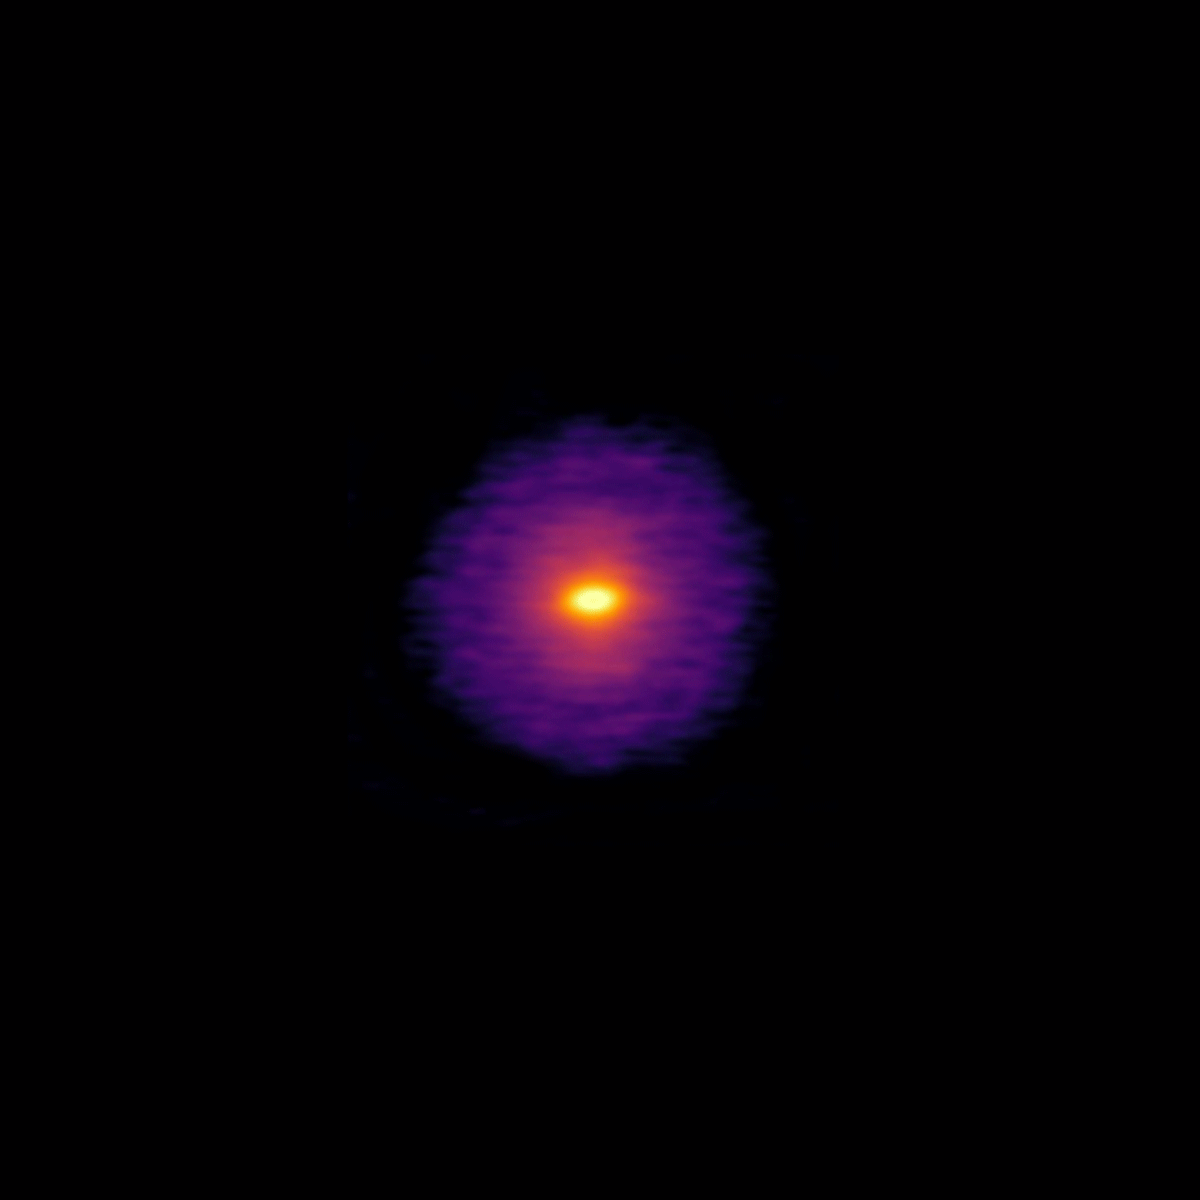 <p>GIF abarcando las imágenes de ALMA de los 20 discos observados en el marco del proyecto DSHARP. Crédito: ALMA (ESO/NAOJ/NRAO), Andrews et al.; N. Lira.</p>
